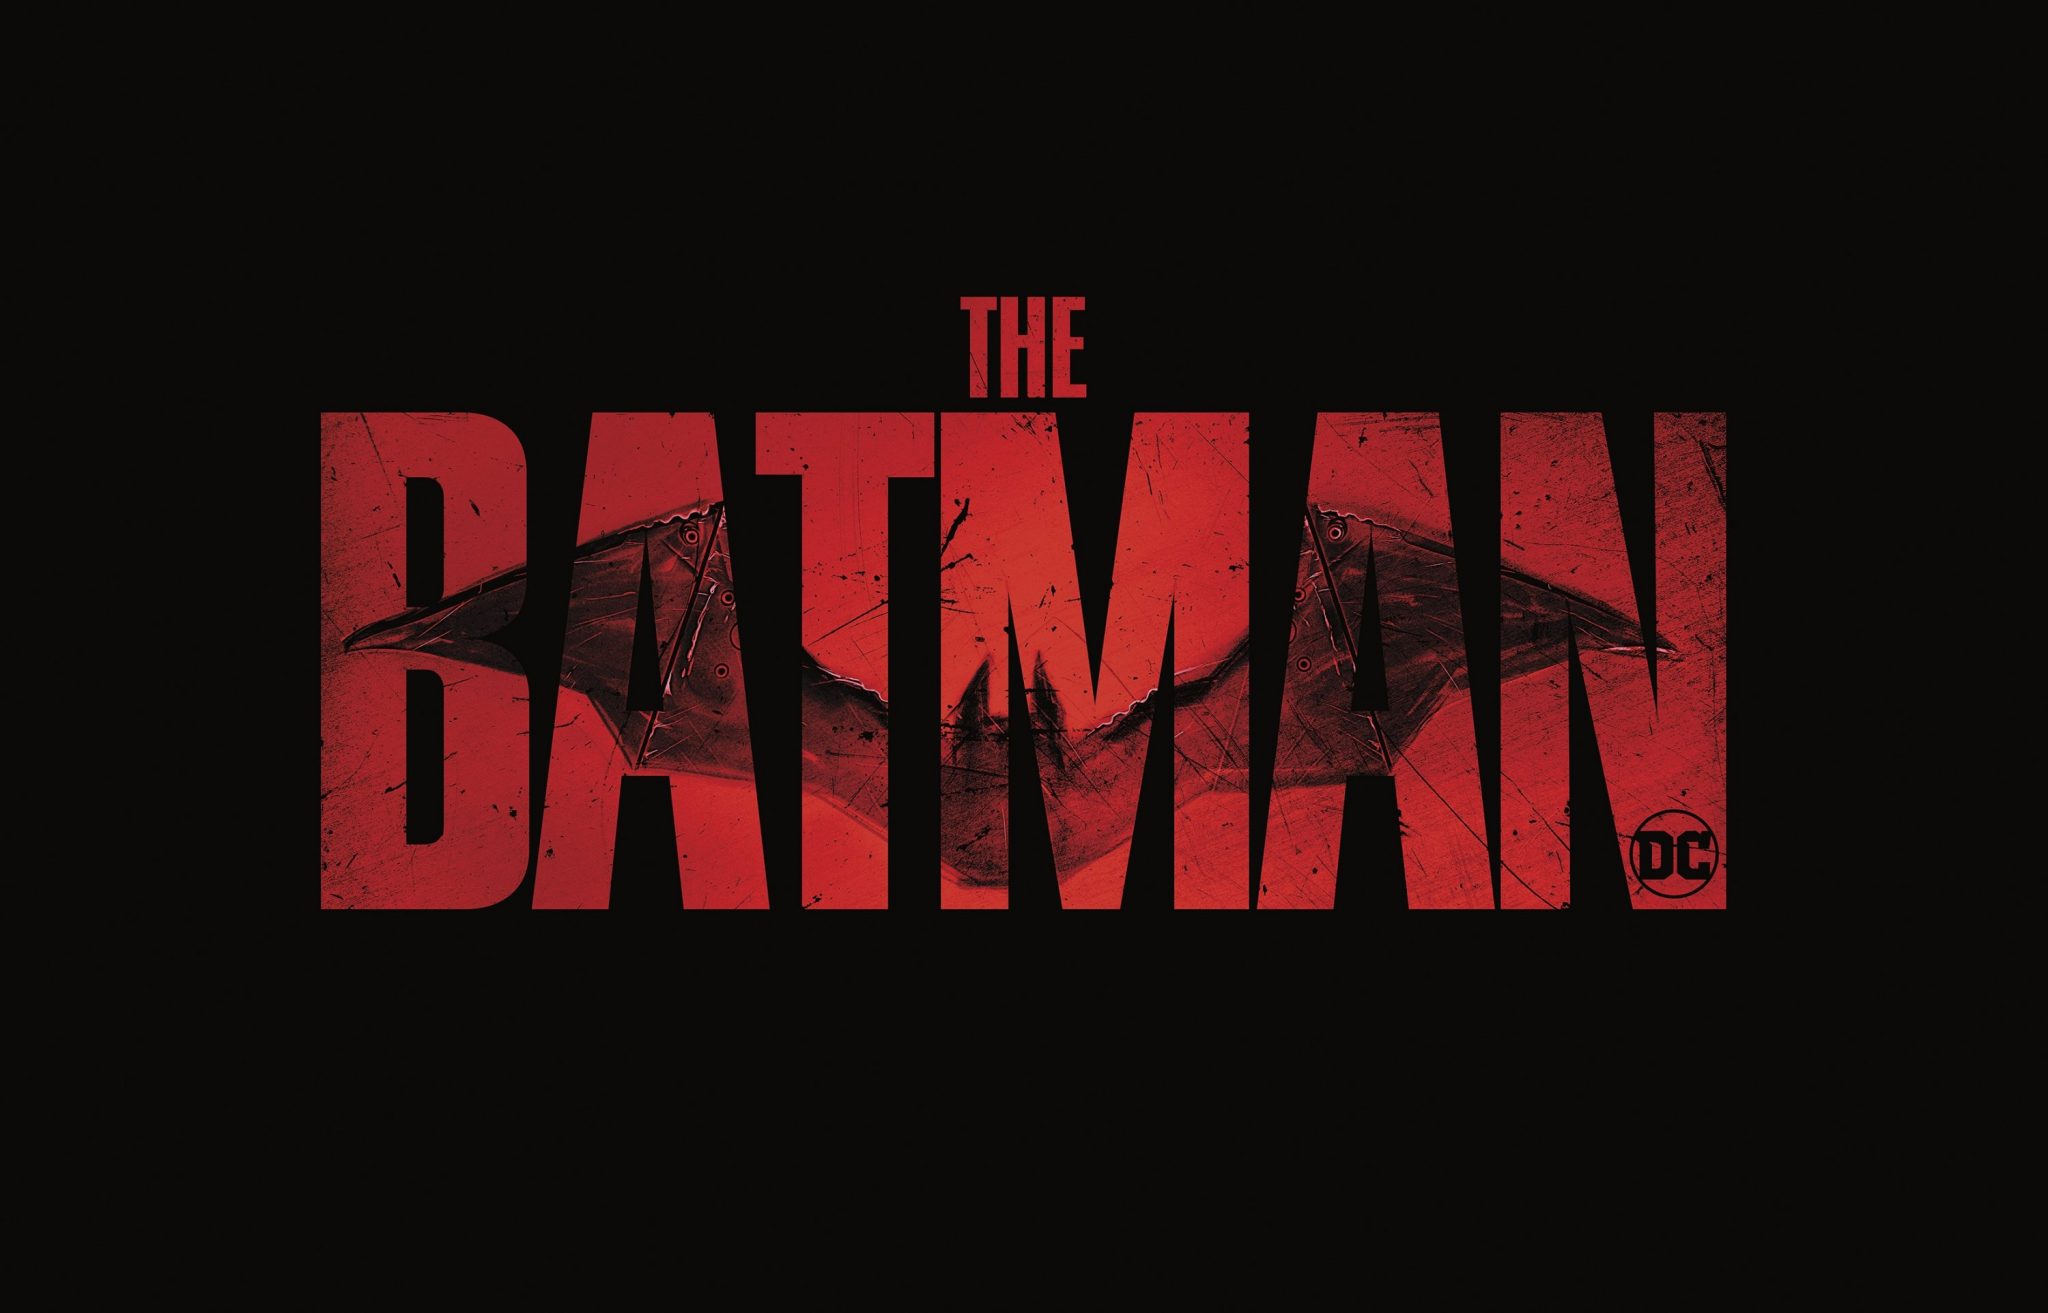 The Batman Movie Trailer Breakdown